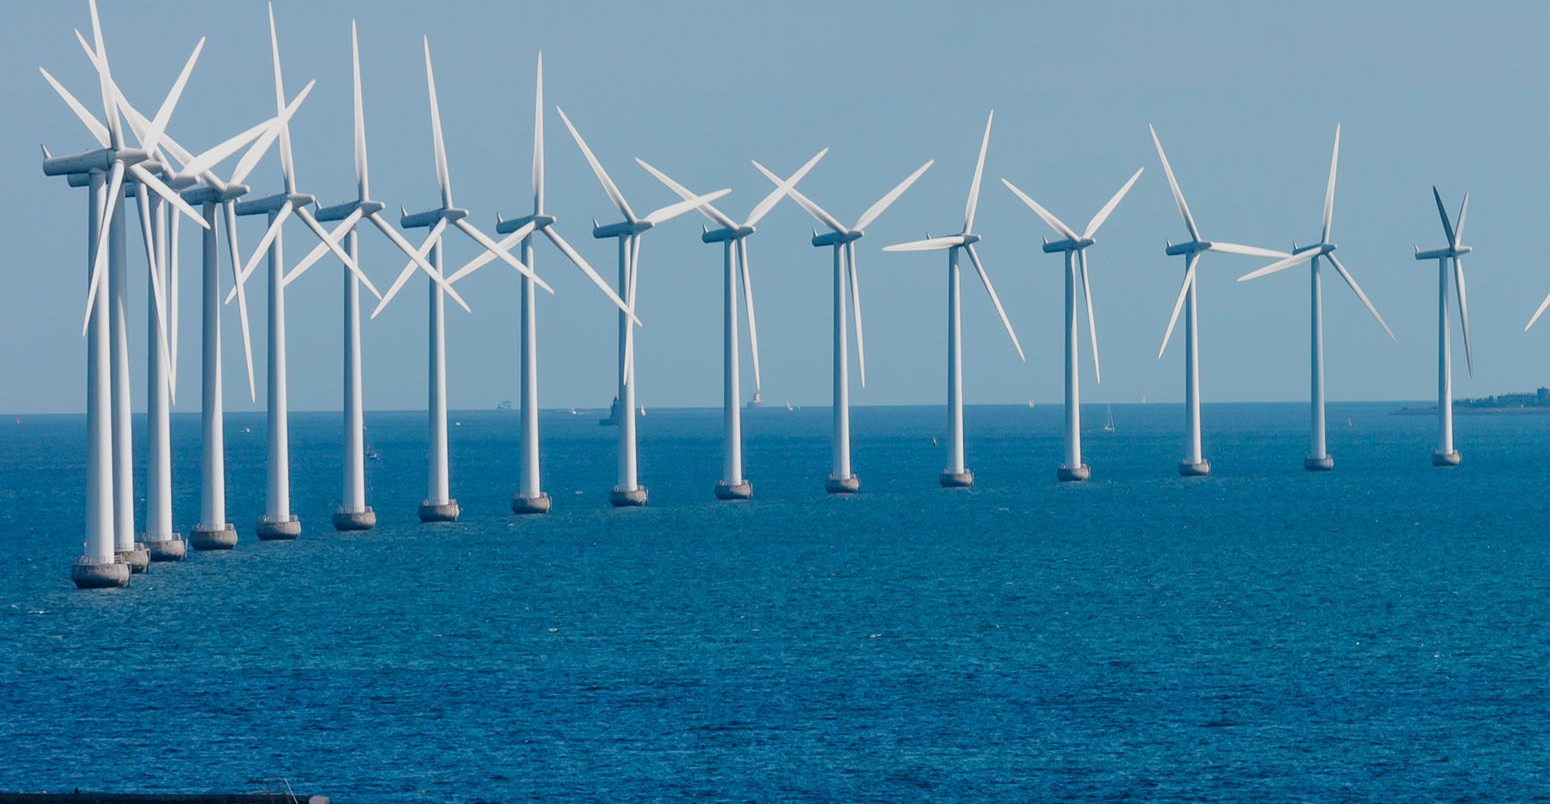 Önümüzdeki 5 yıl içinde küresel rüzgâr enerjisi kapasitesinin %60 oranında artması bekleniyor